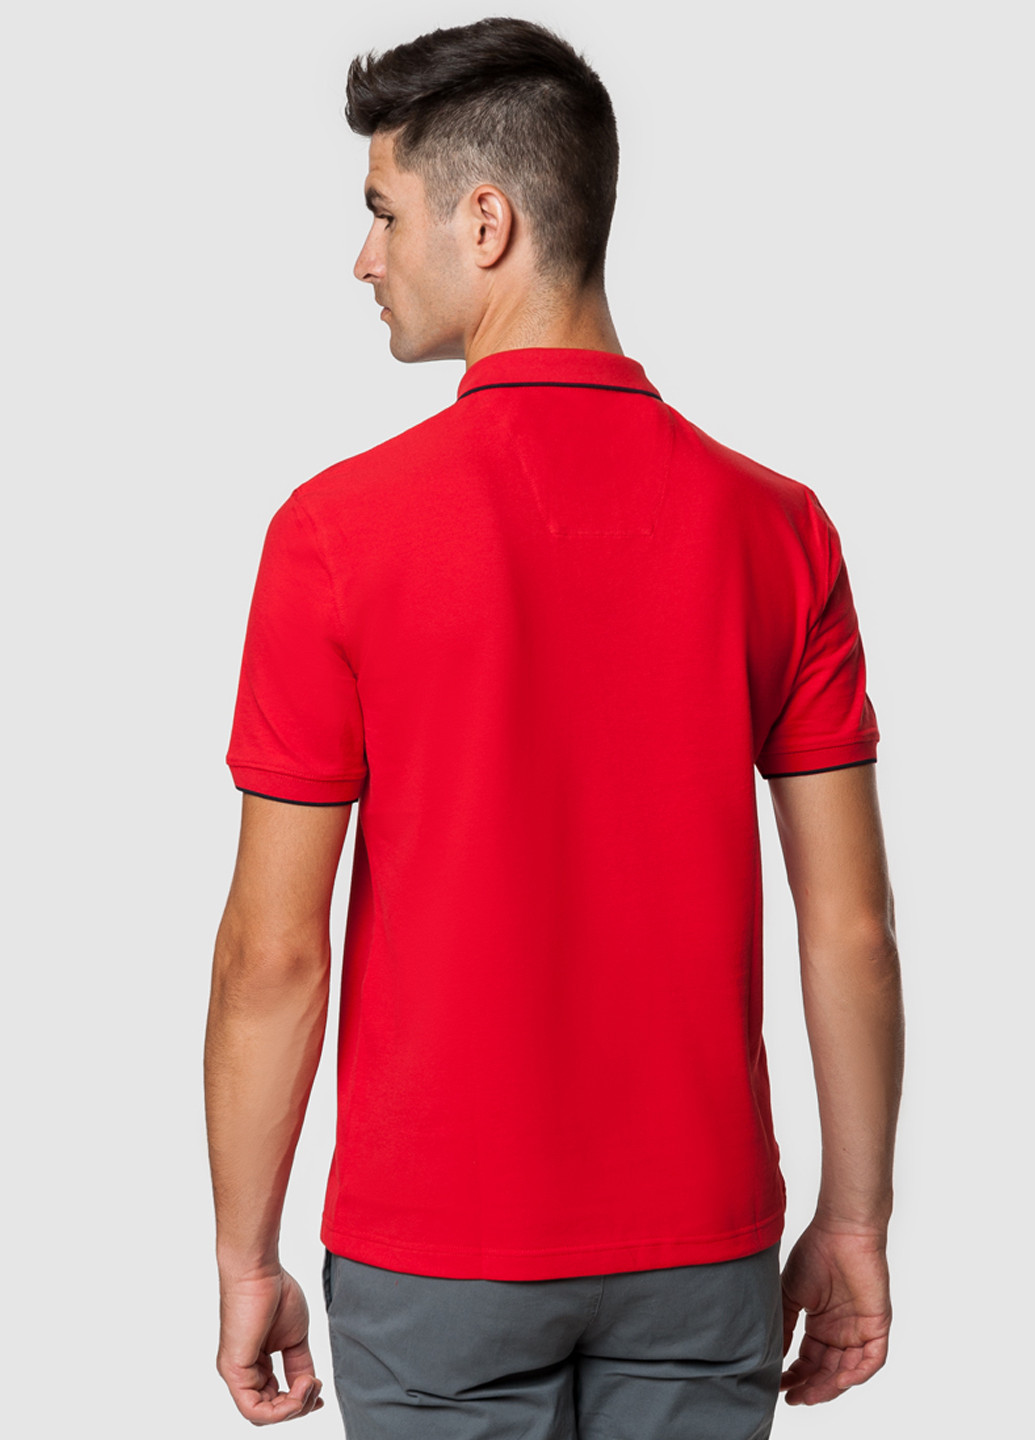 Красная футболка поло мужская Arber Polo AS-18.1